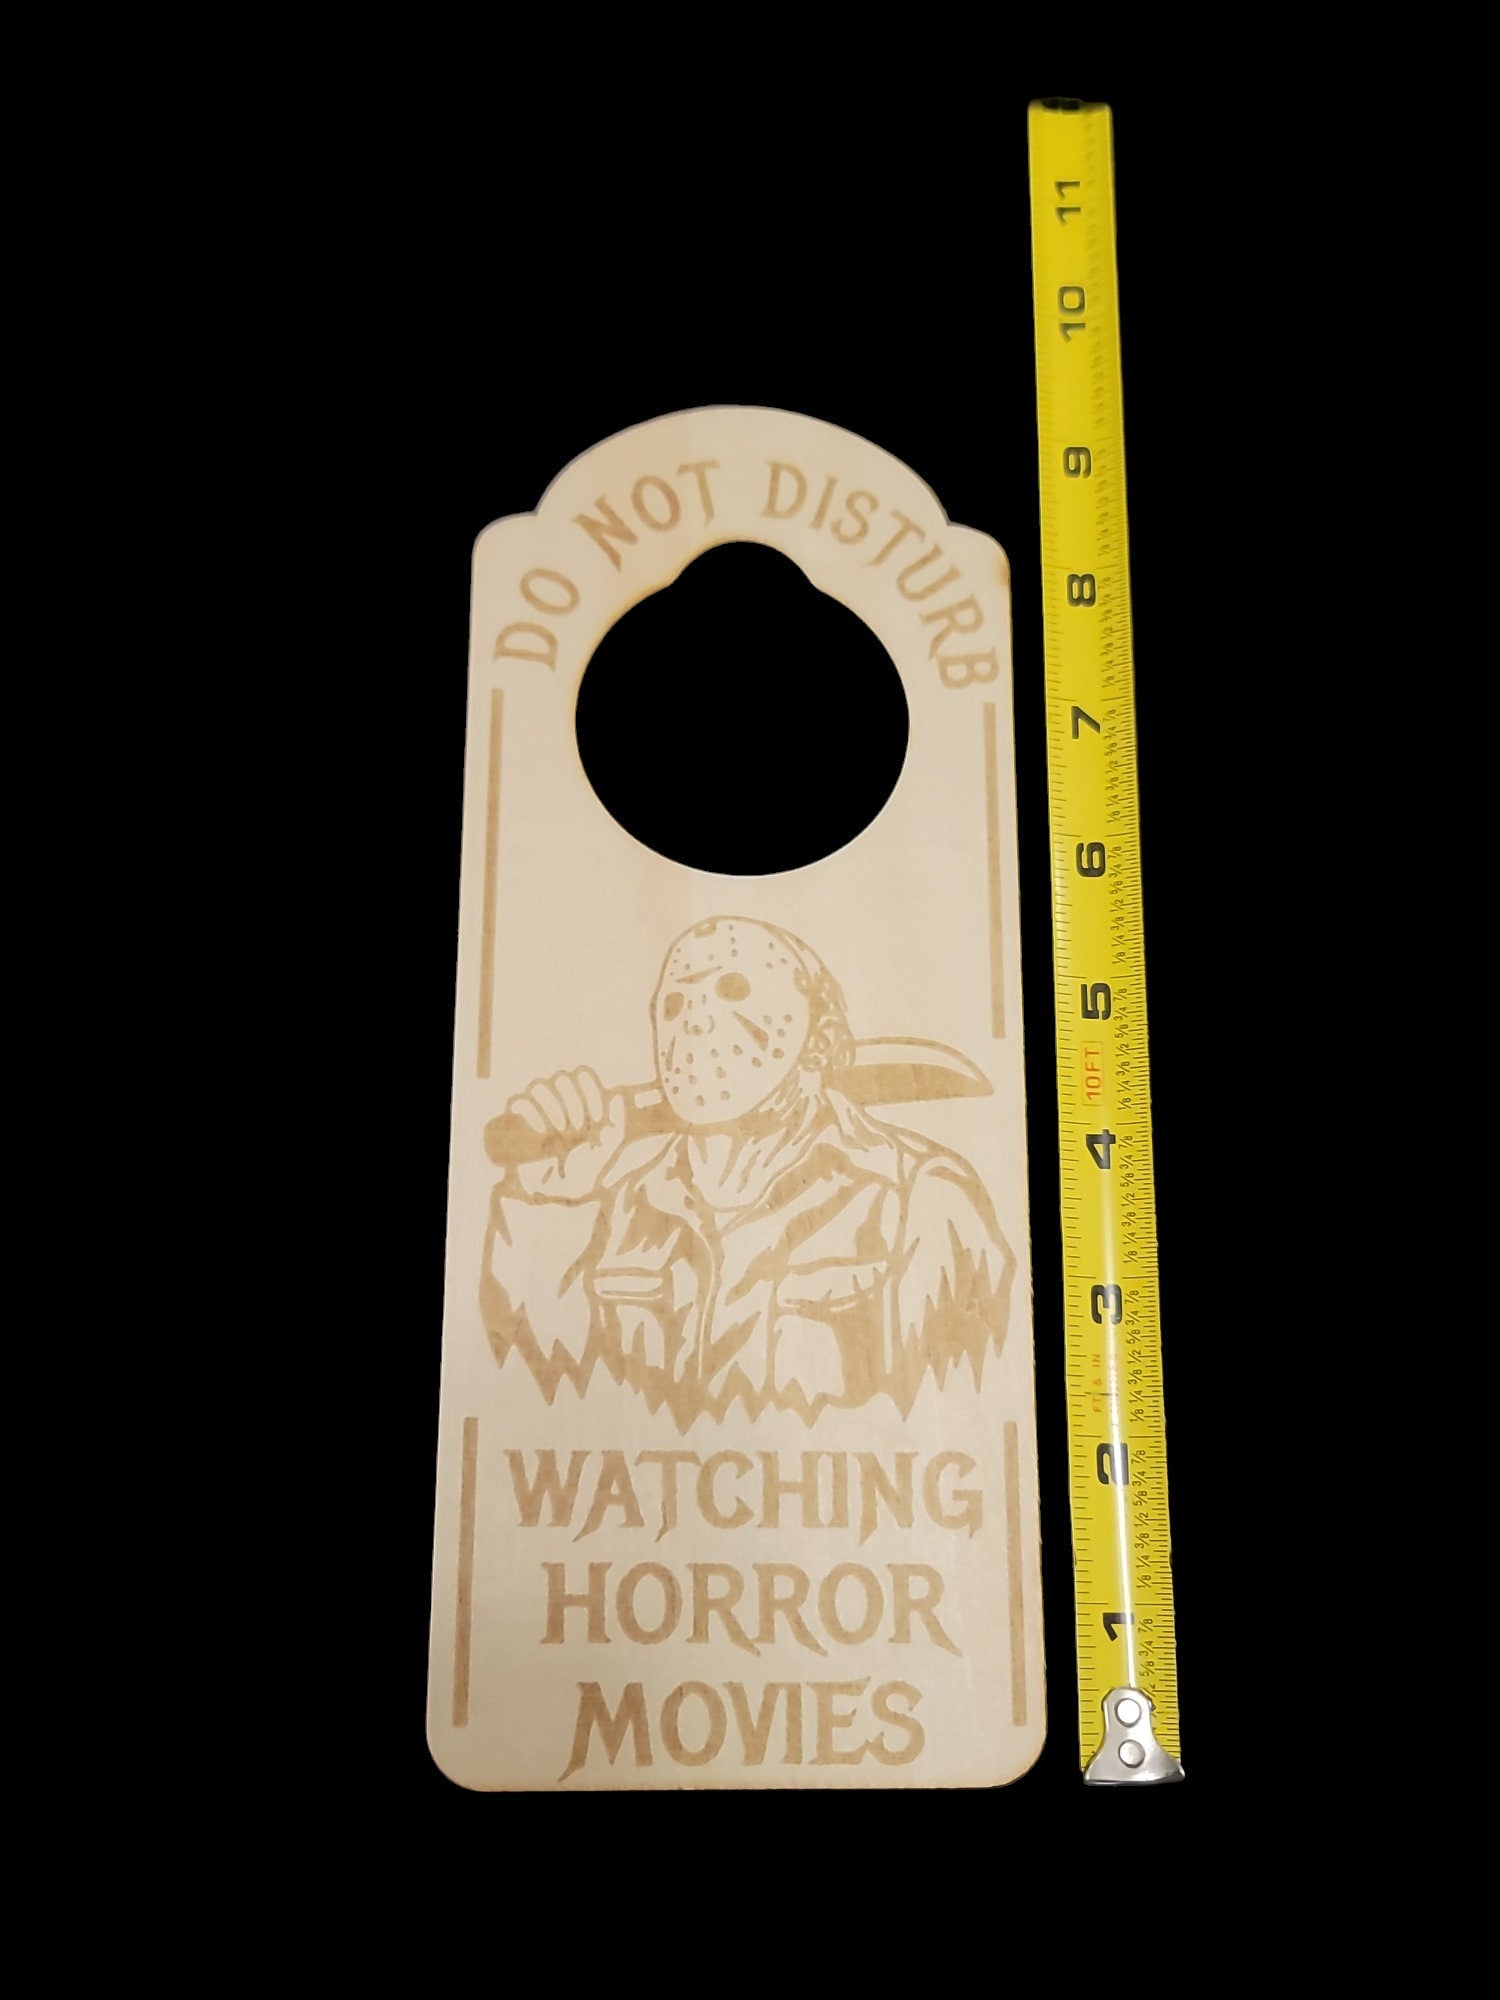 Do not disturb Jason Voorhees door hanger Friday the 13th